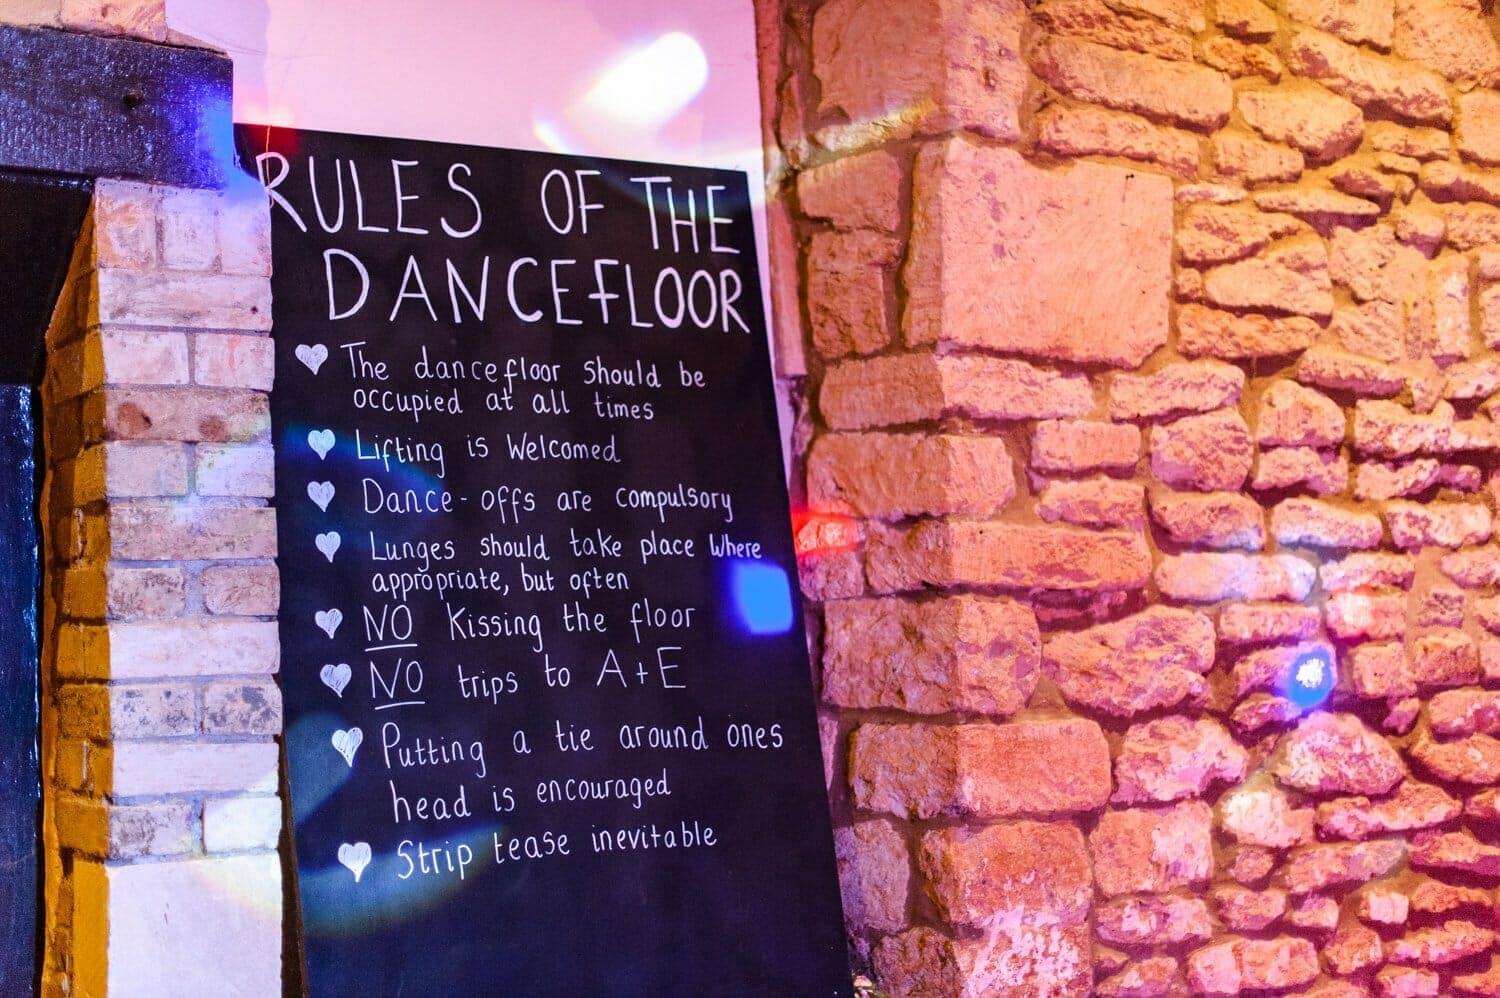 Dancefloor rules